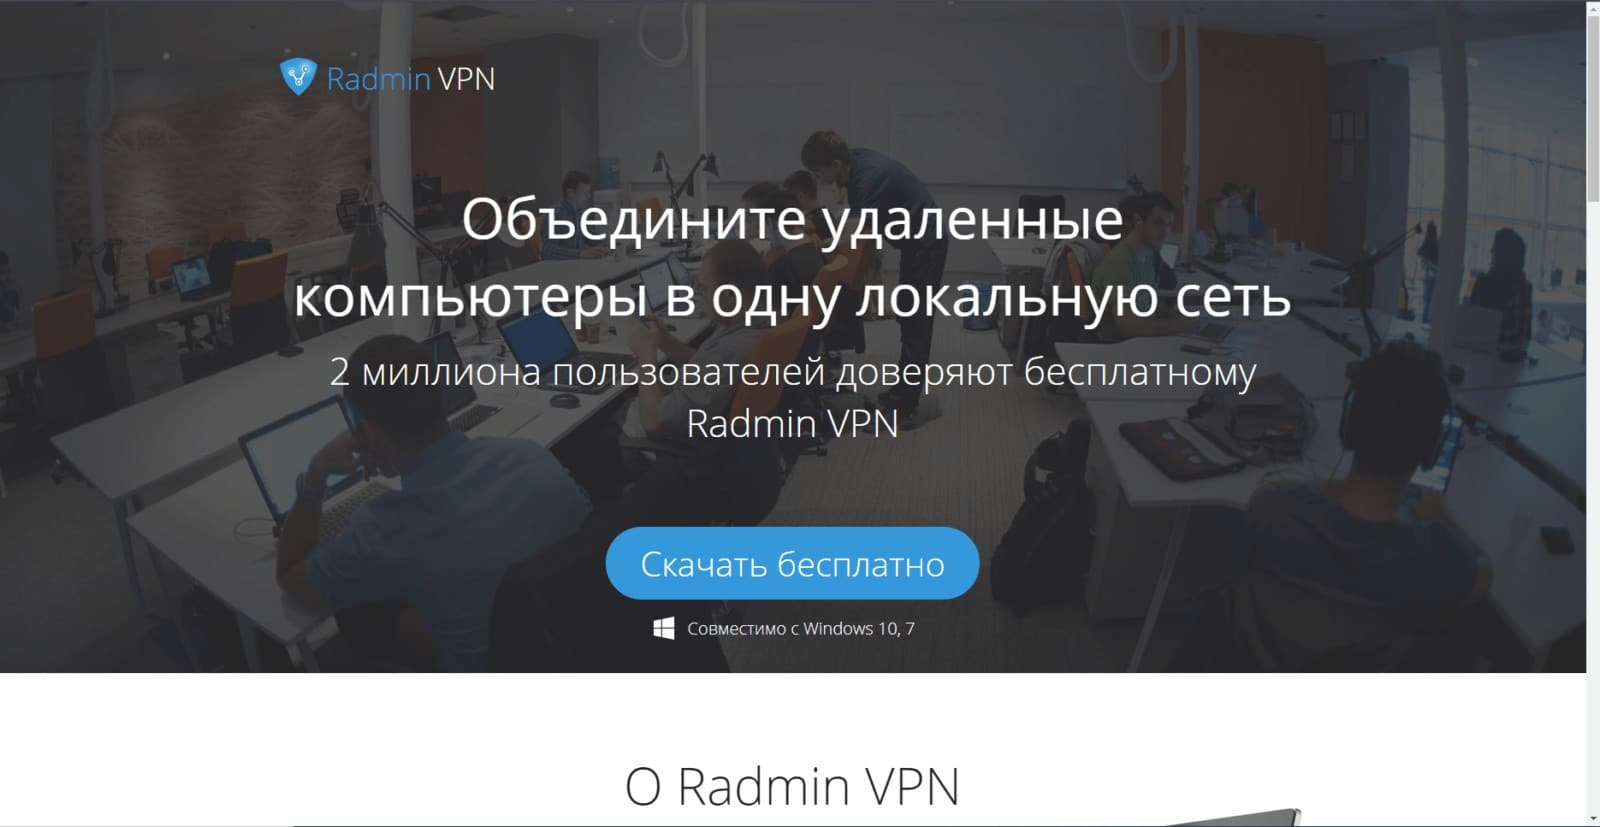 radmin vpn как поиграть с друзьями по сети. radmin_скачать